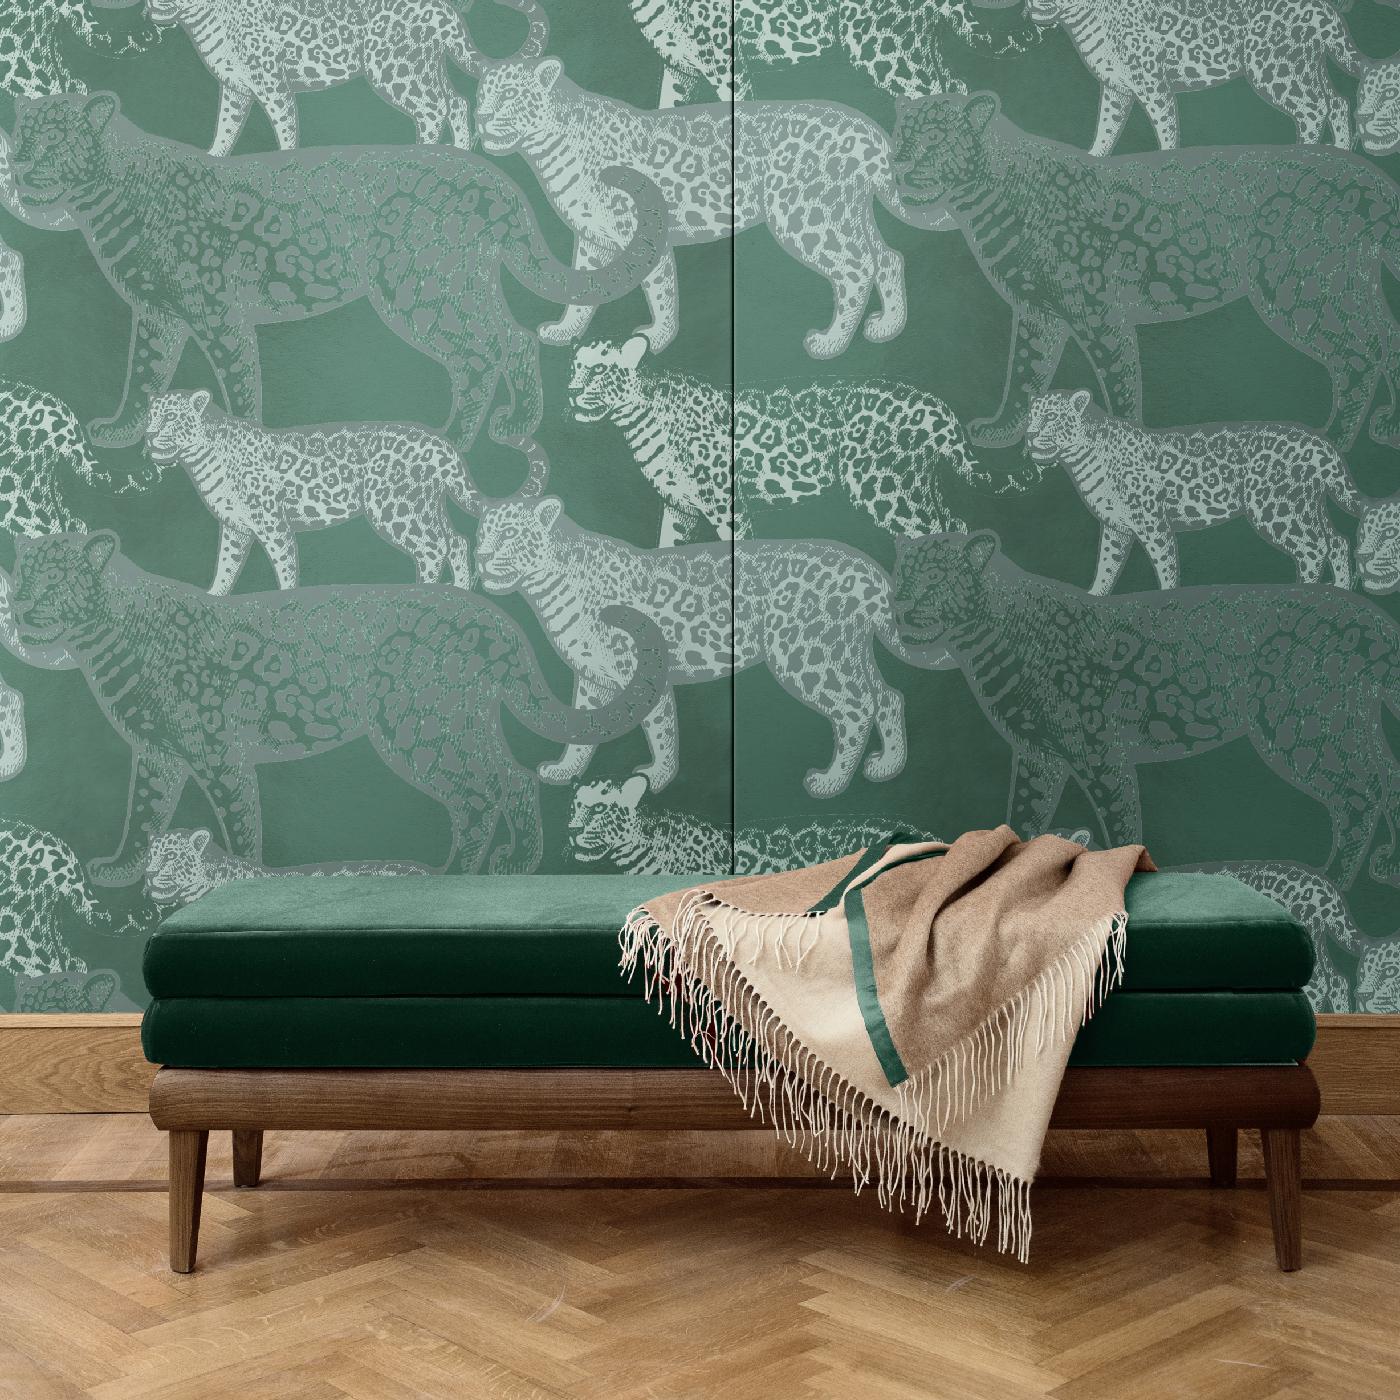 Drei verschiedene Versionen von Leoparden, die fein dargestellt sind, während sie über einen dunklen Hintergrund laufen, machen diesen Wandbelag zu einer kühnen und anspruchsvollen Wahl für ein modernes Interieur. Seine hypnotisierende Qualität wird